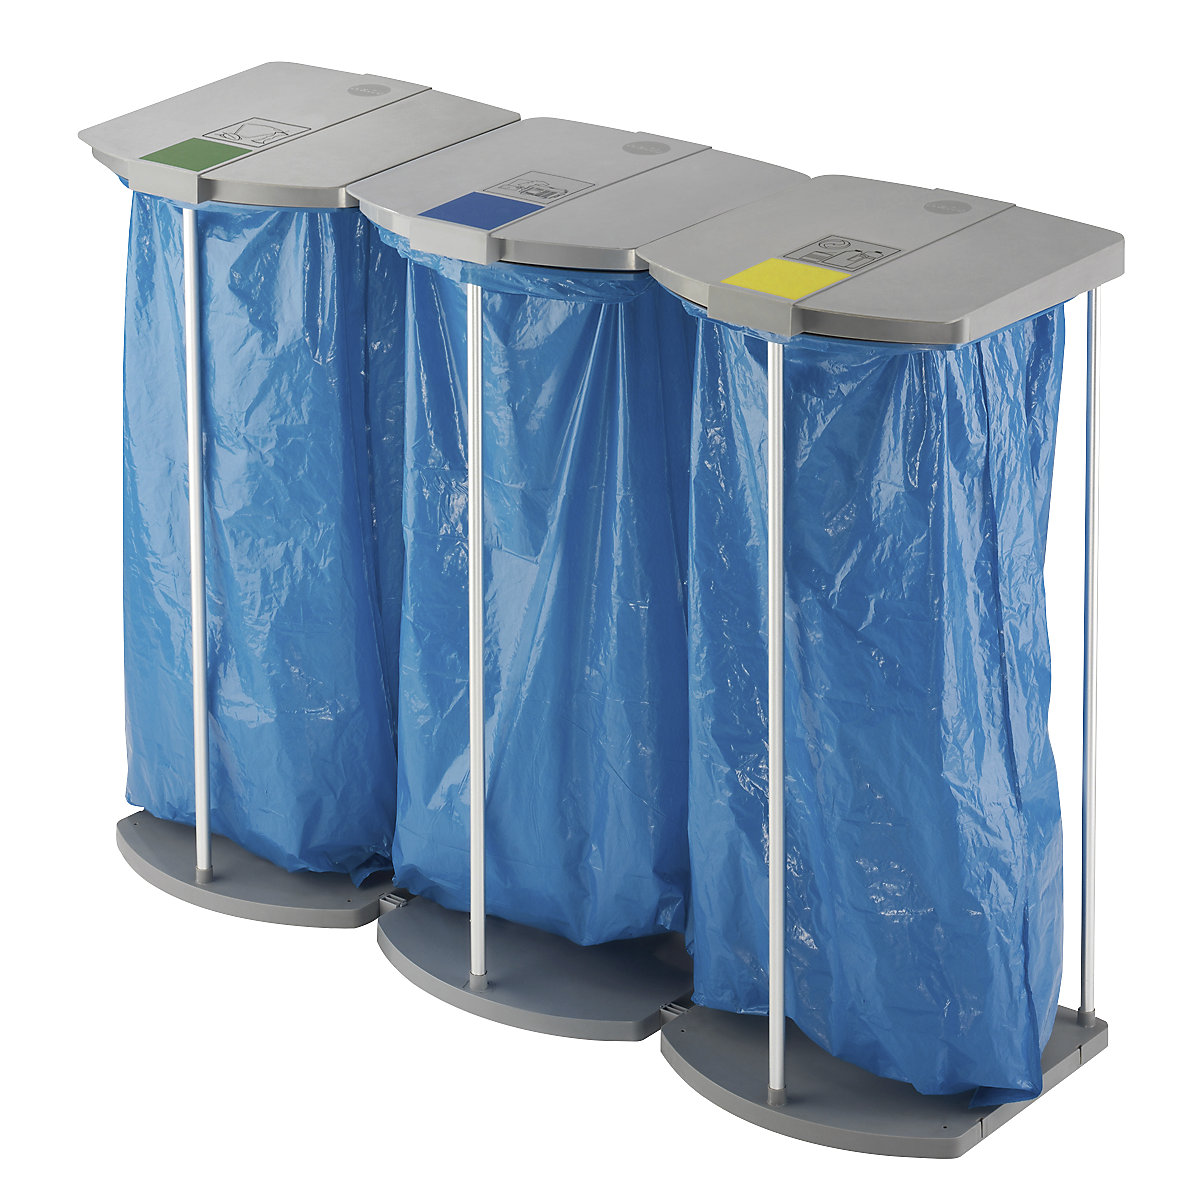 Supporto per sacchi rifiuti con 250 sacchi blu per la raccolta differenziata – Hailo